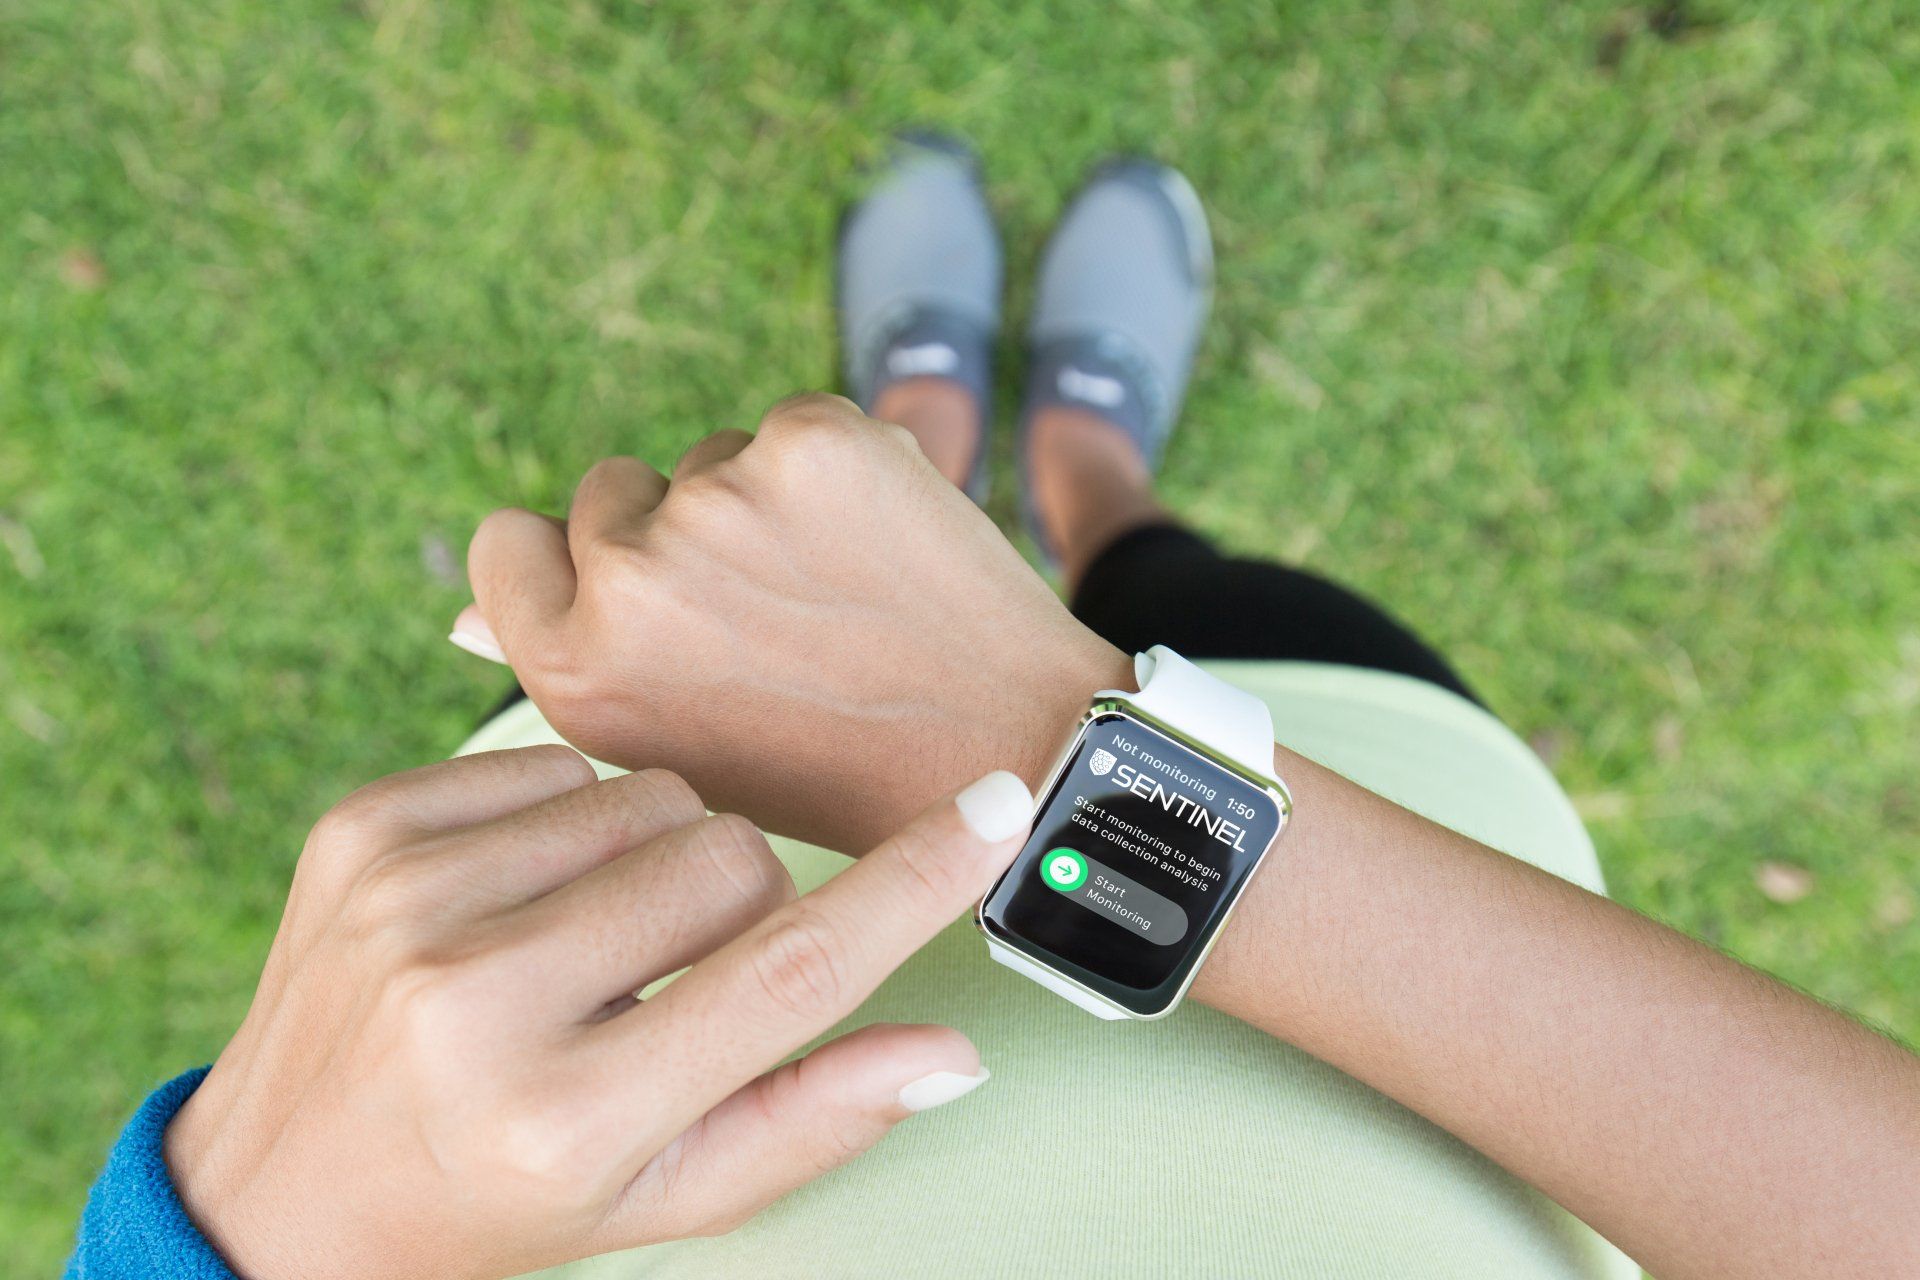 Woman in sports wear wearing a smart watch showing an app